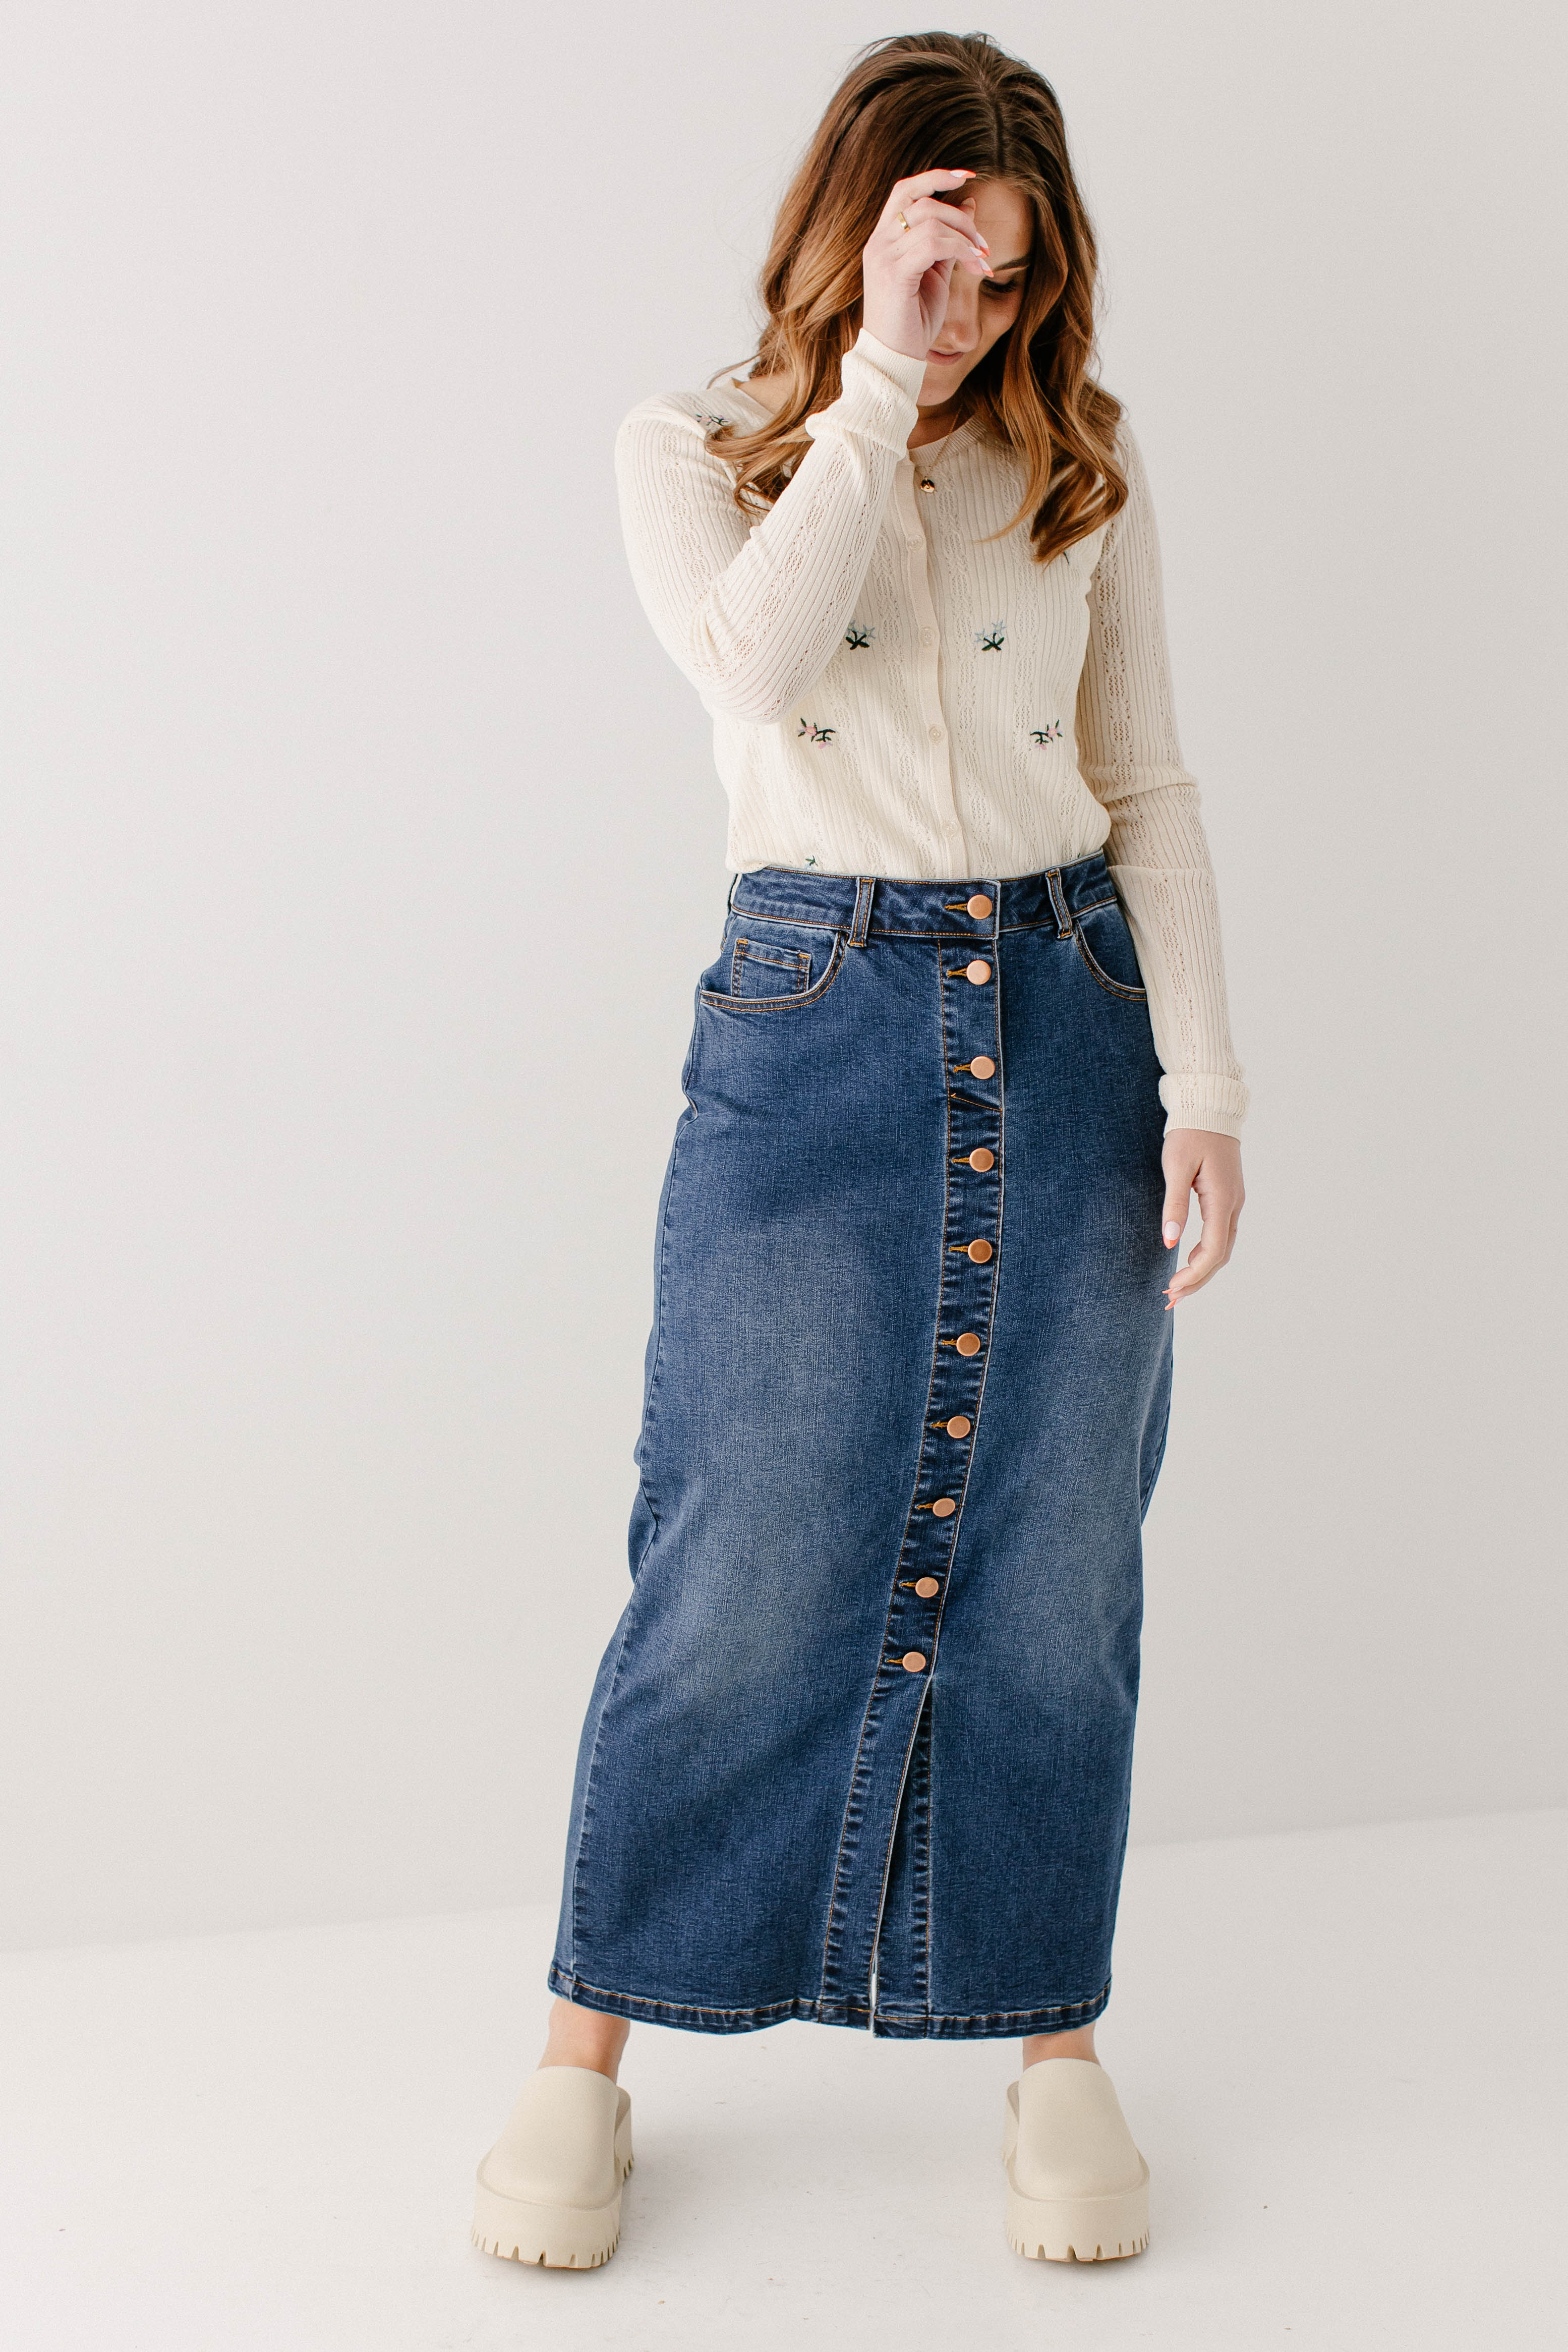 Women Denim Long Skirt Fishtail High Waist Bodycon Maxi Jeans Elegant Skirts  New | eBay